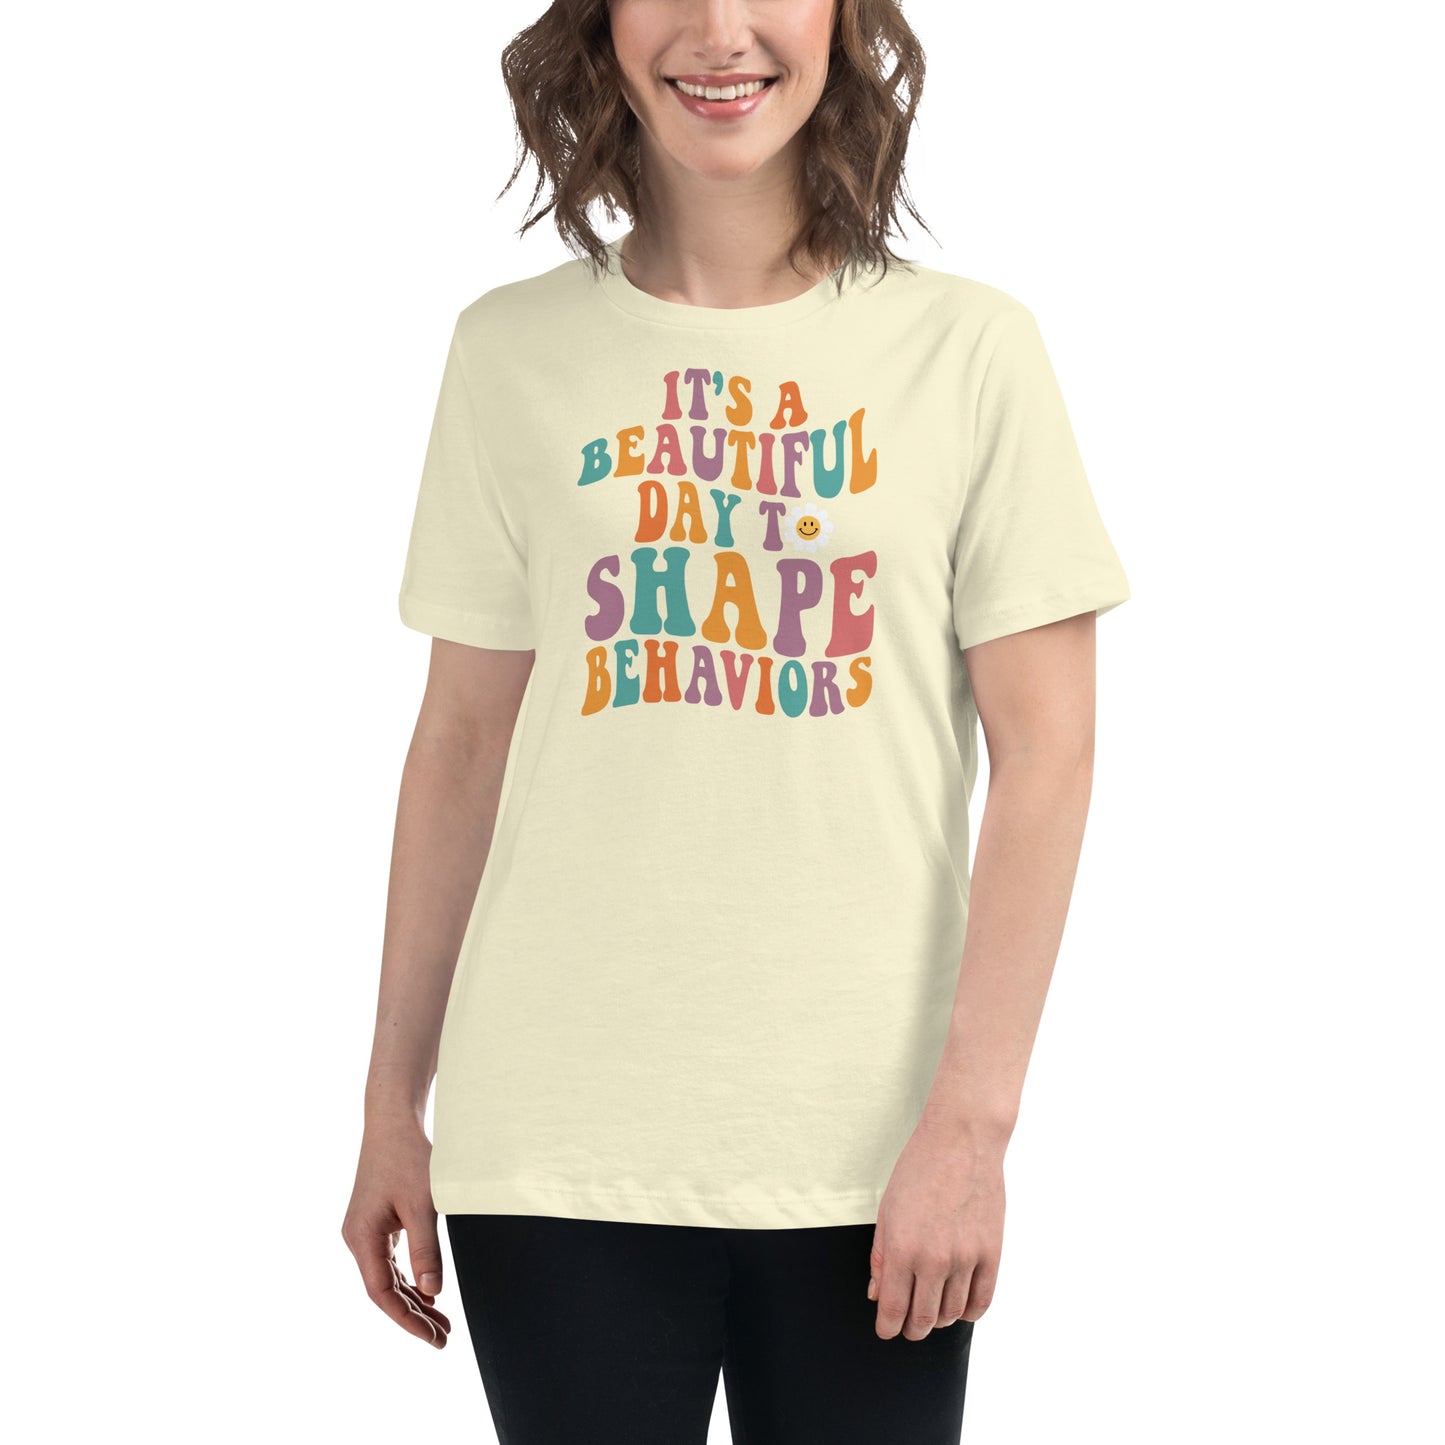 It’s a Beautiful Day to Shape Behaviors - Women's T-Shirt